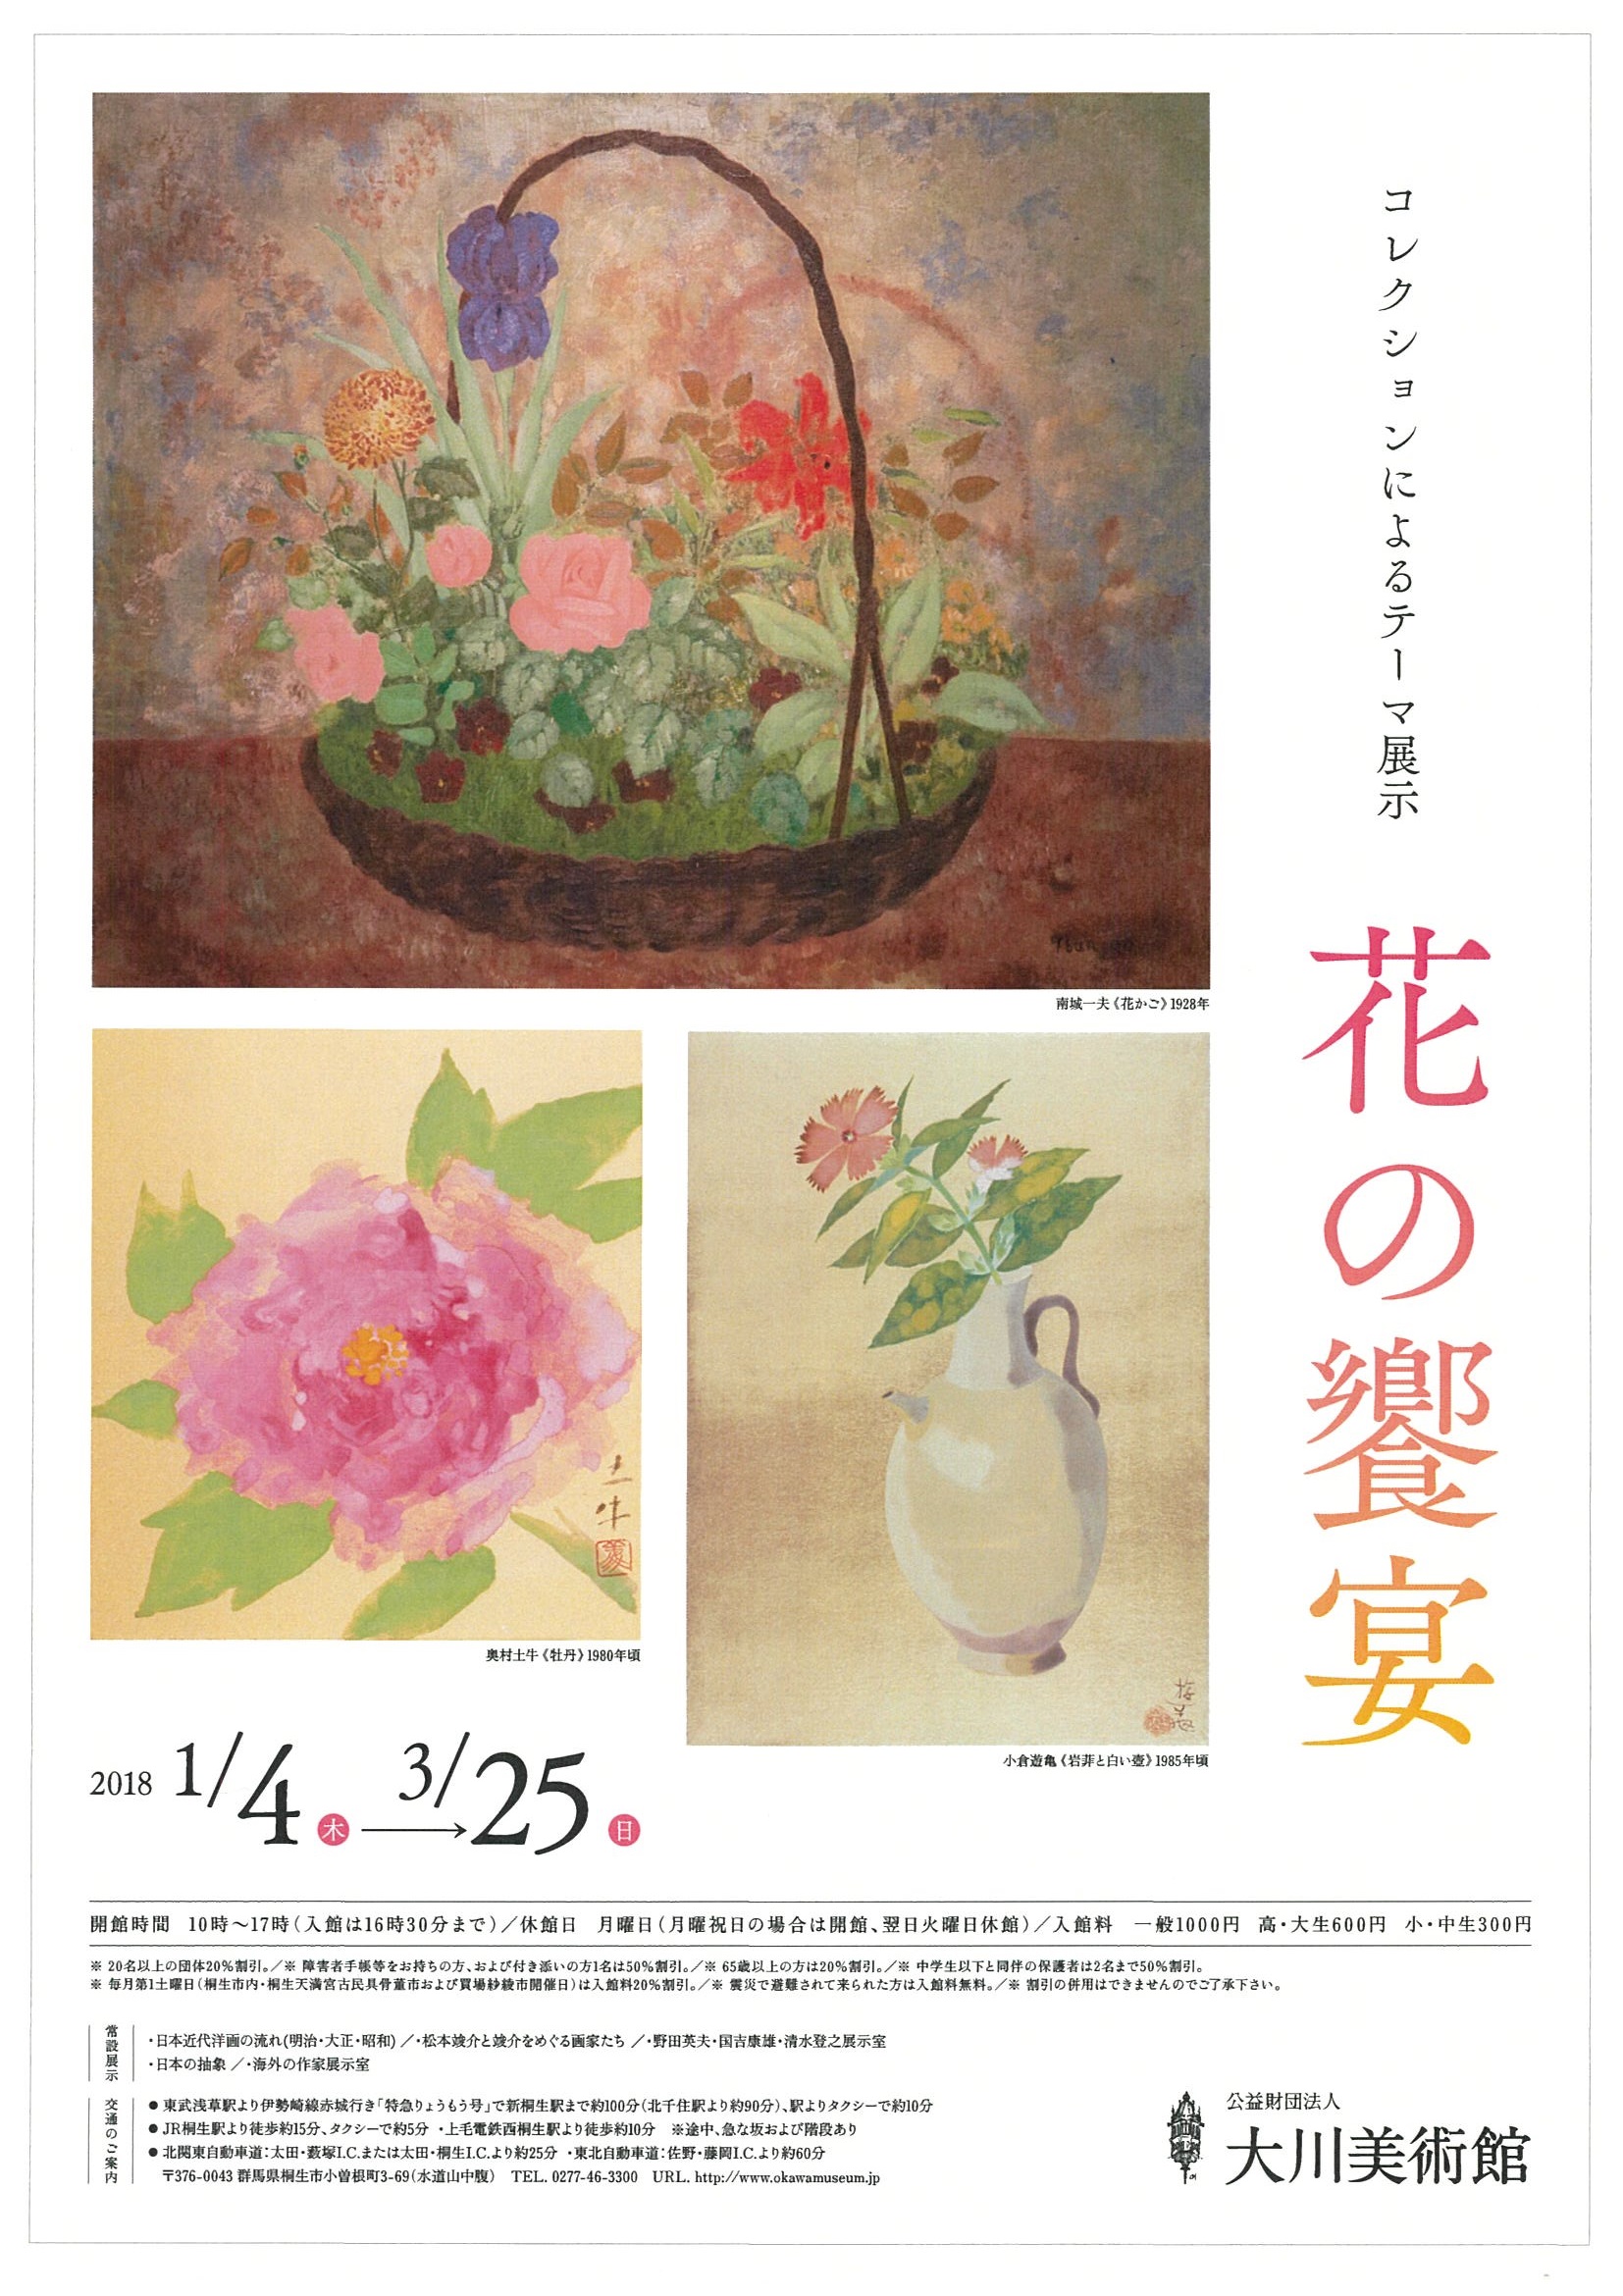 コレクションによるテーマ展示<br>花の饗宴<br>
2018年1月4日（木）～3月25日（日）